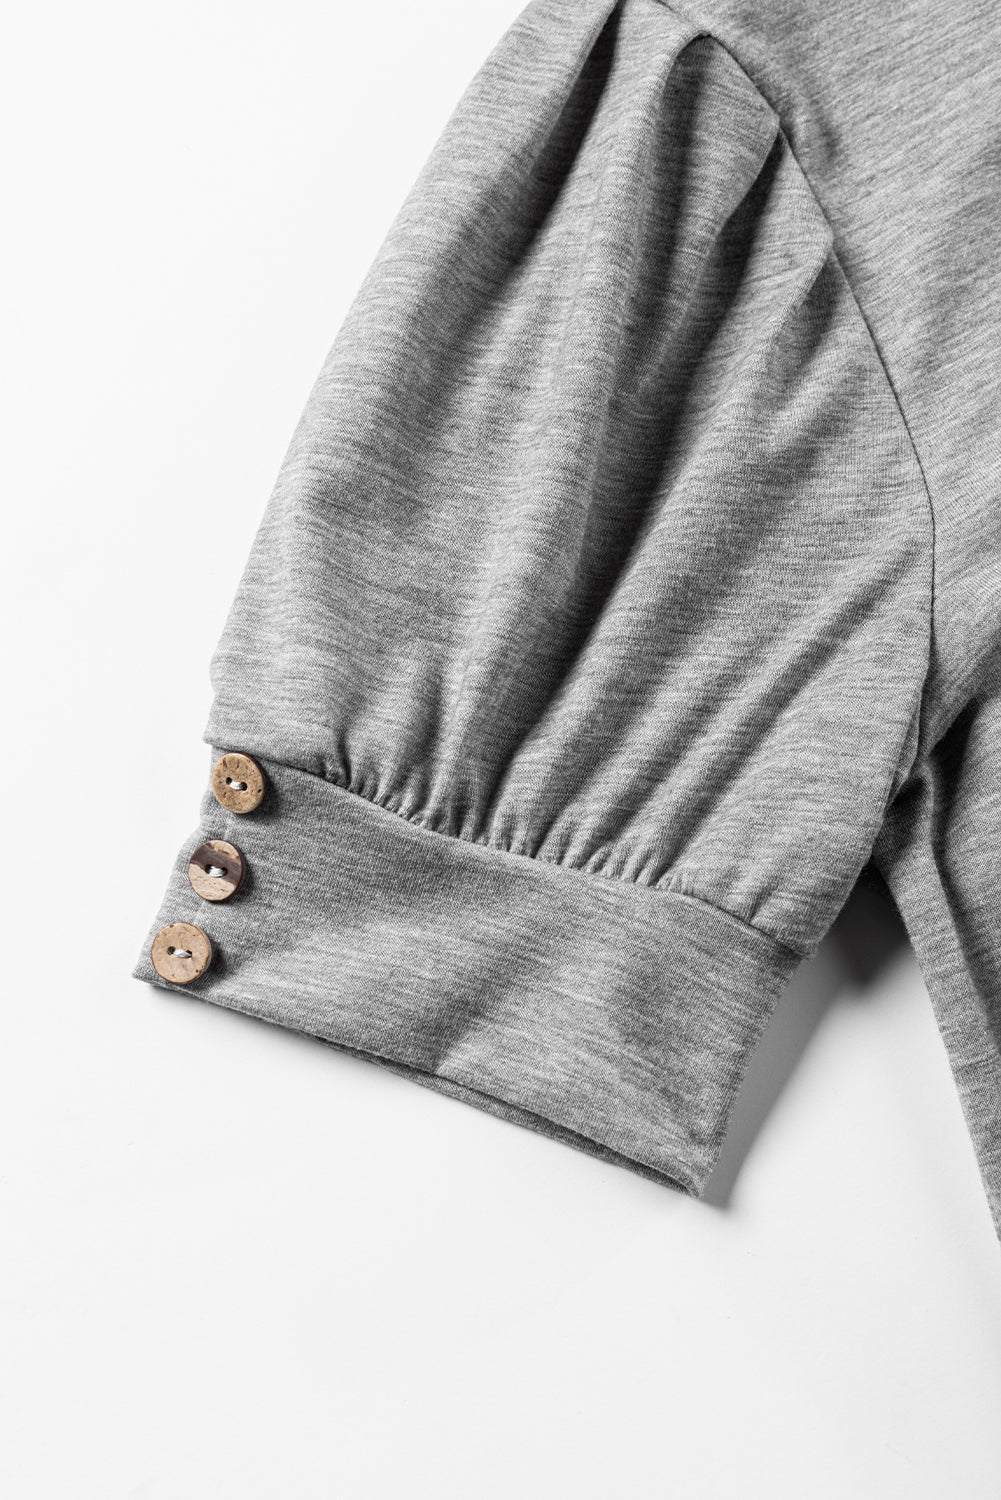 T-shirt en tricot gris clair à manches bouffantes plissées